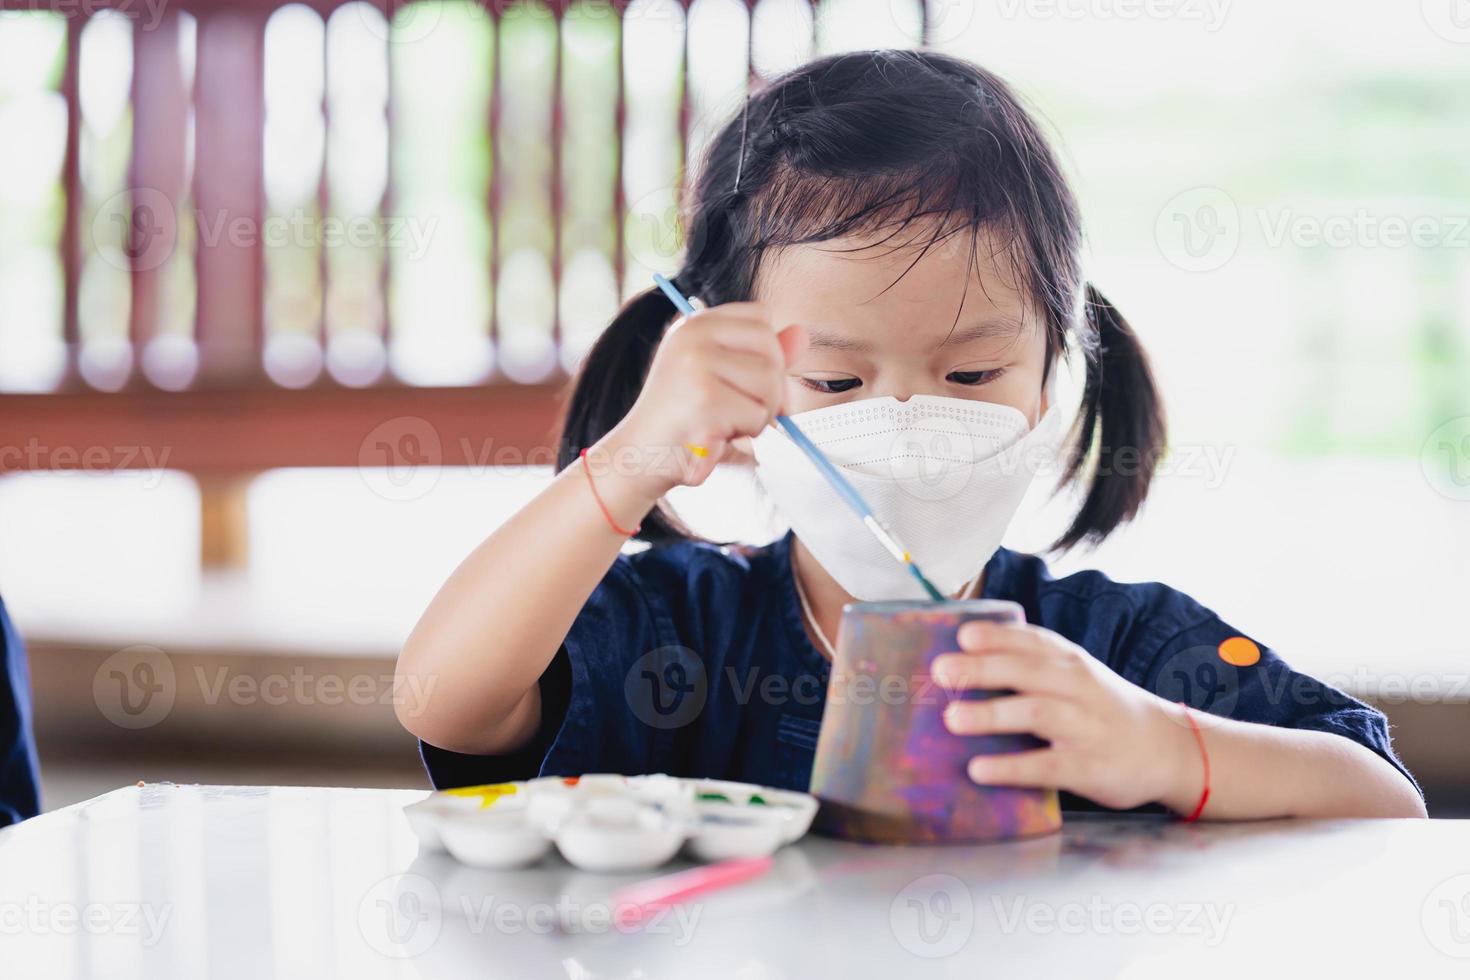 bambino che fa mestiere con il pennello. bambina che indossa una maschera chirurgica bianca per prevenire la diffusione di virus e inquinamento da polvere pm2.5. foto